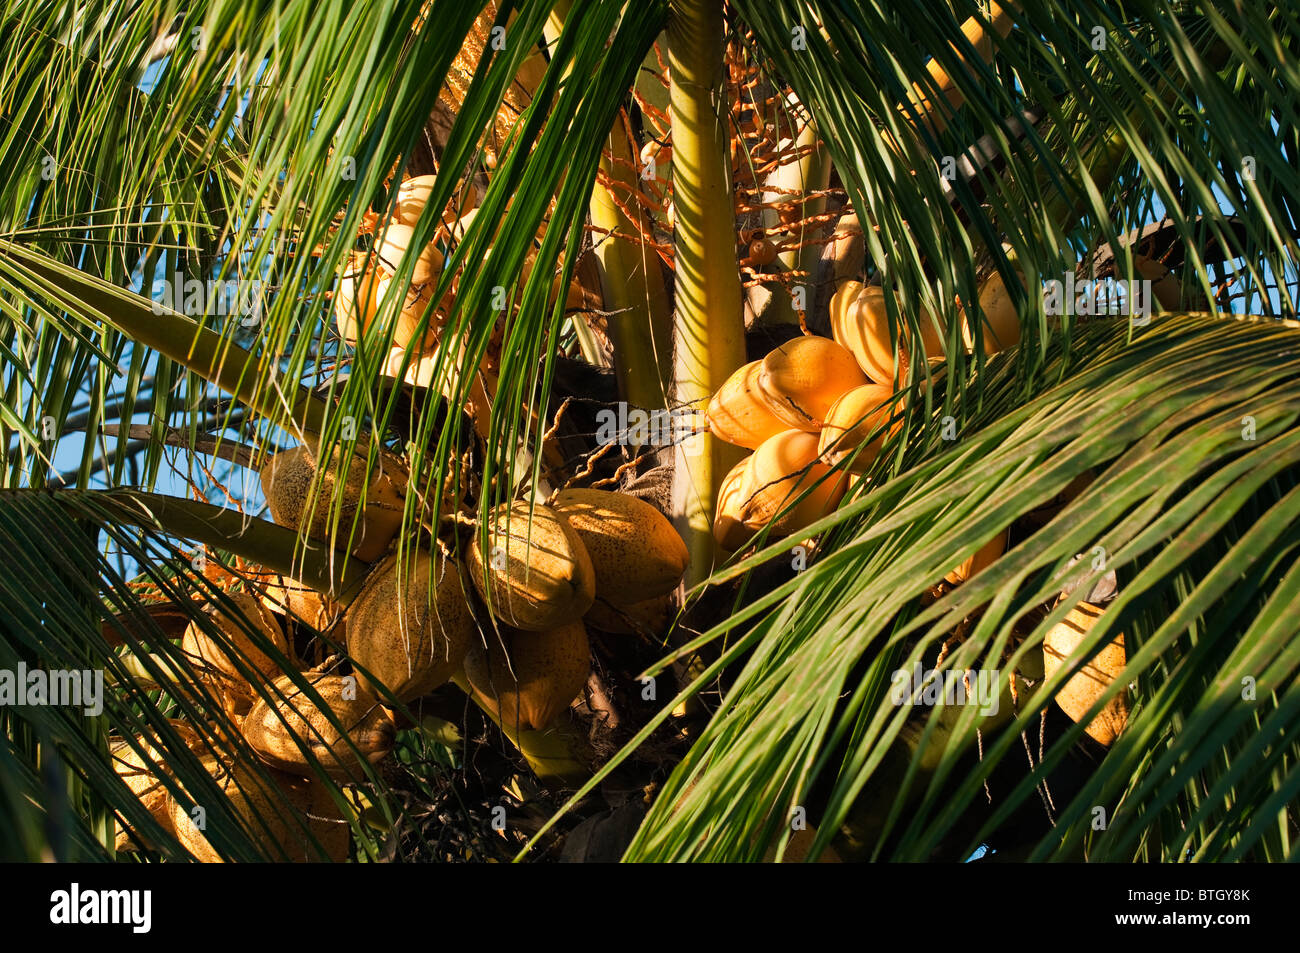 Ripe coconuts in a palm outside Sepilok Orangutan Rehabilitation Centre in Borneo Stock Photo